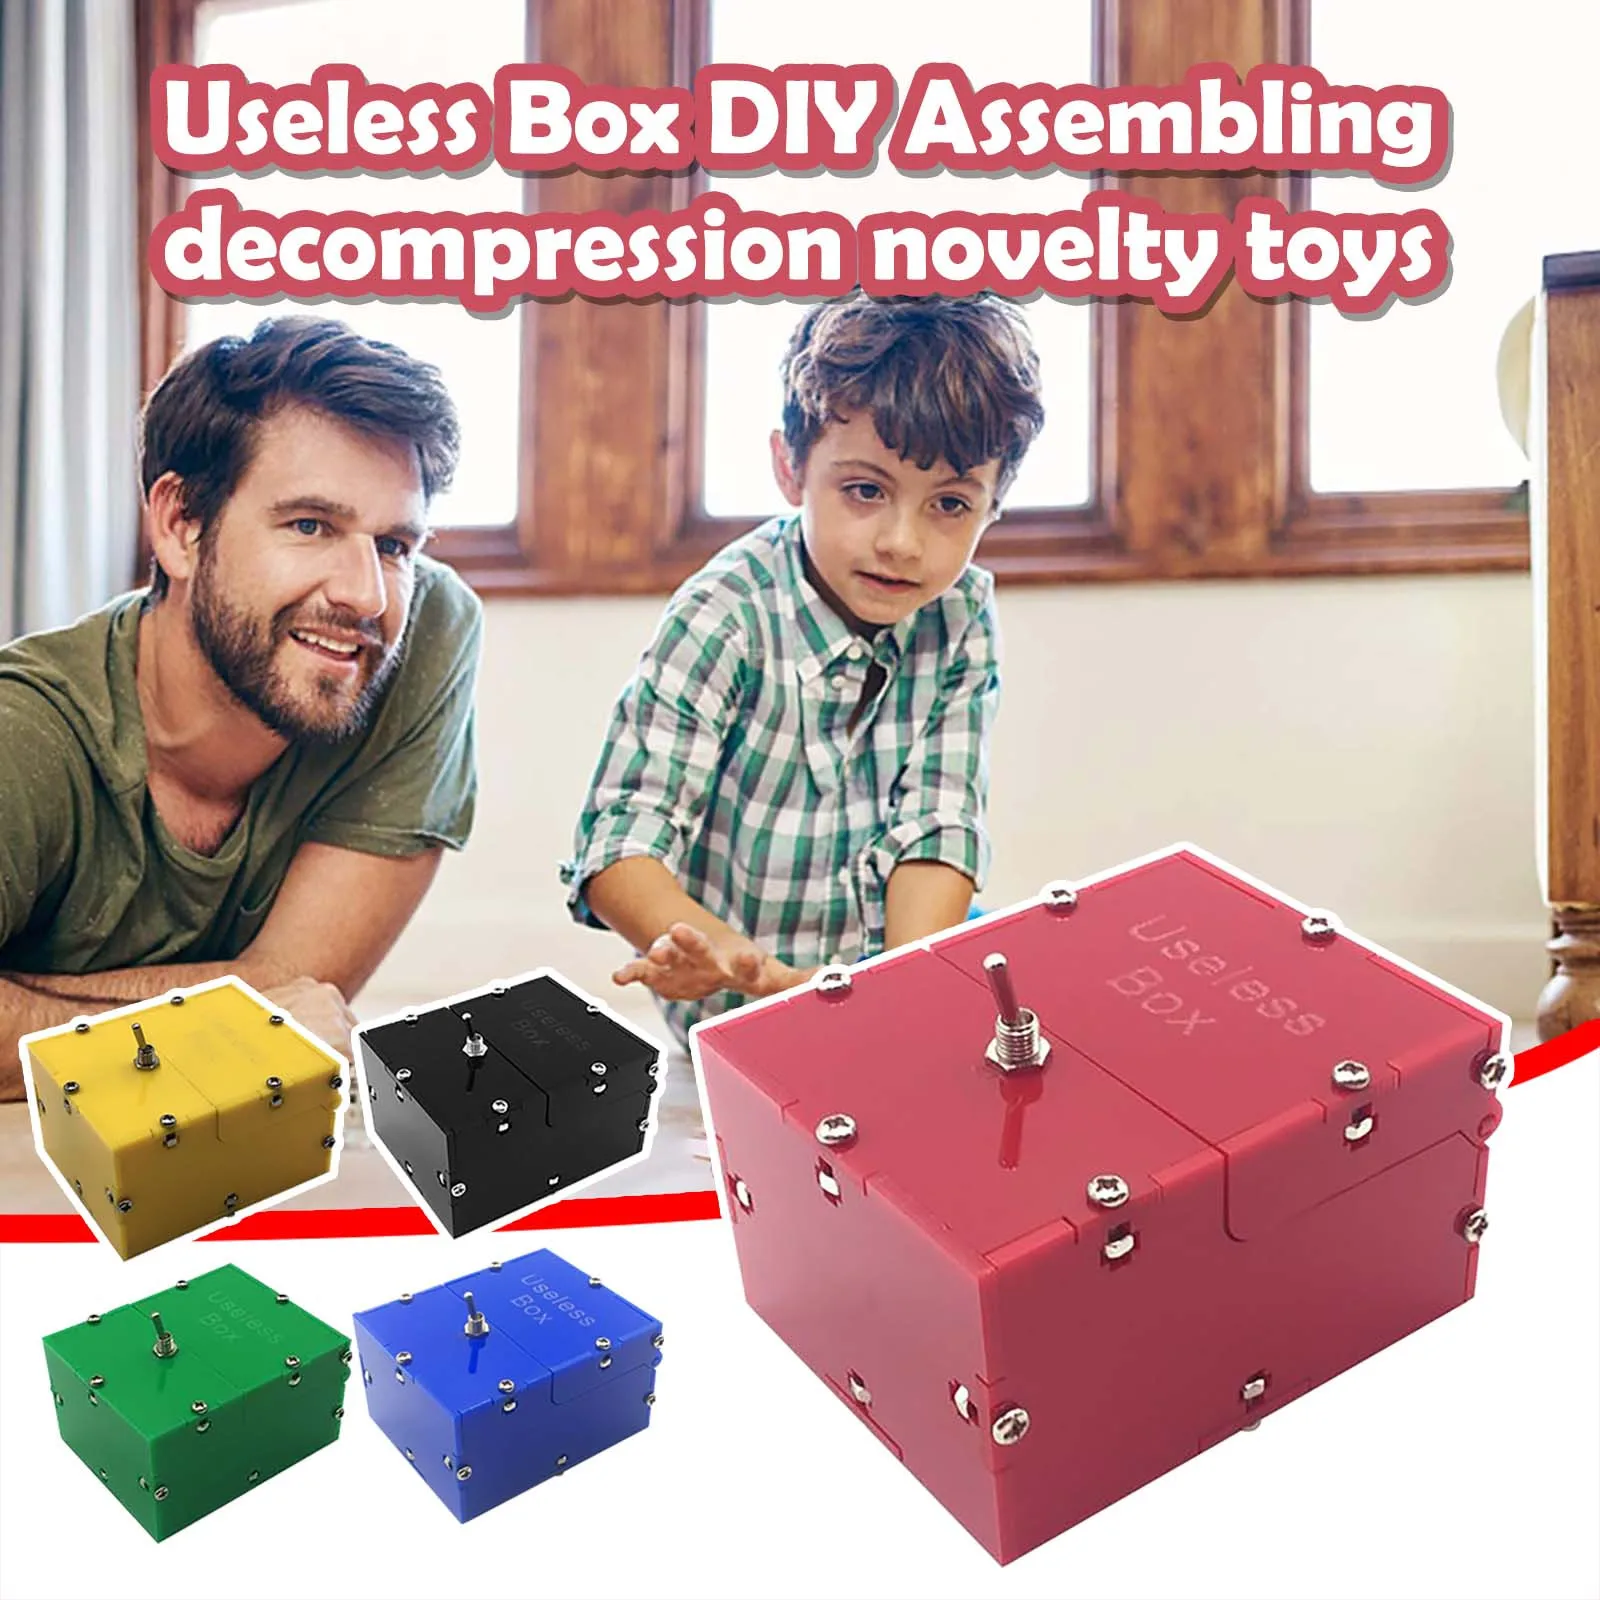 Useless Box Leave Me Alone Interesting Pastime Machine Box Kit Gift Toys 1PCS 